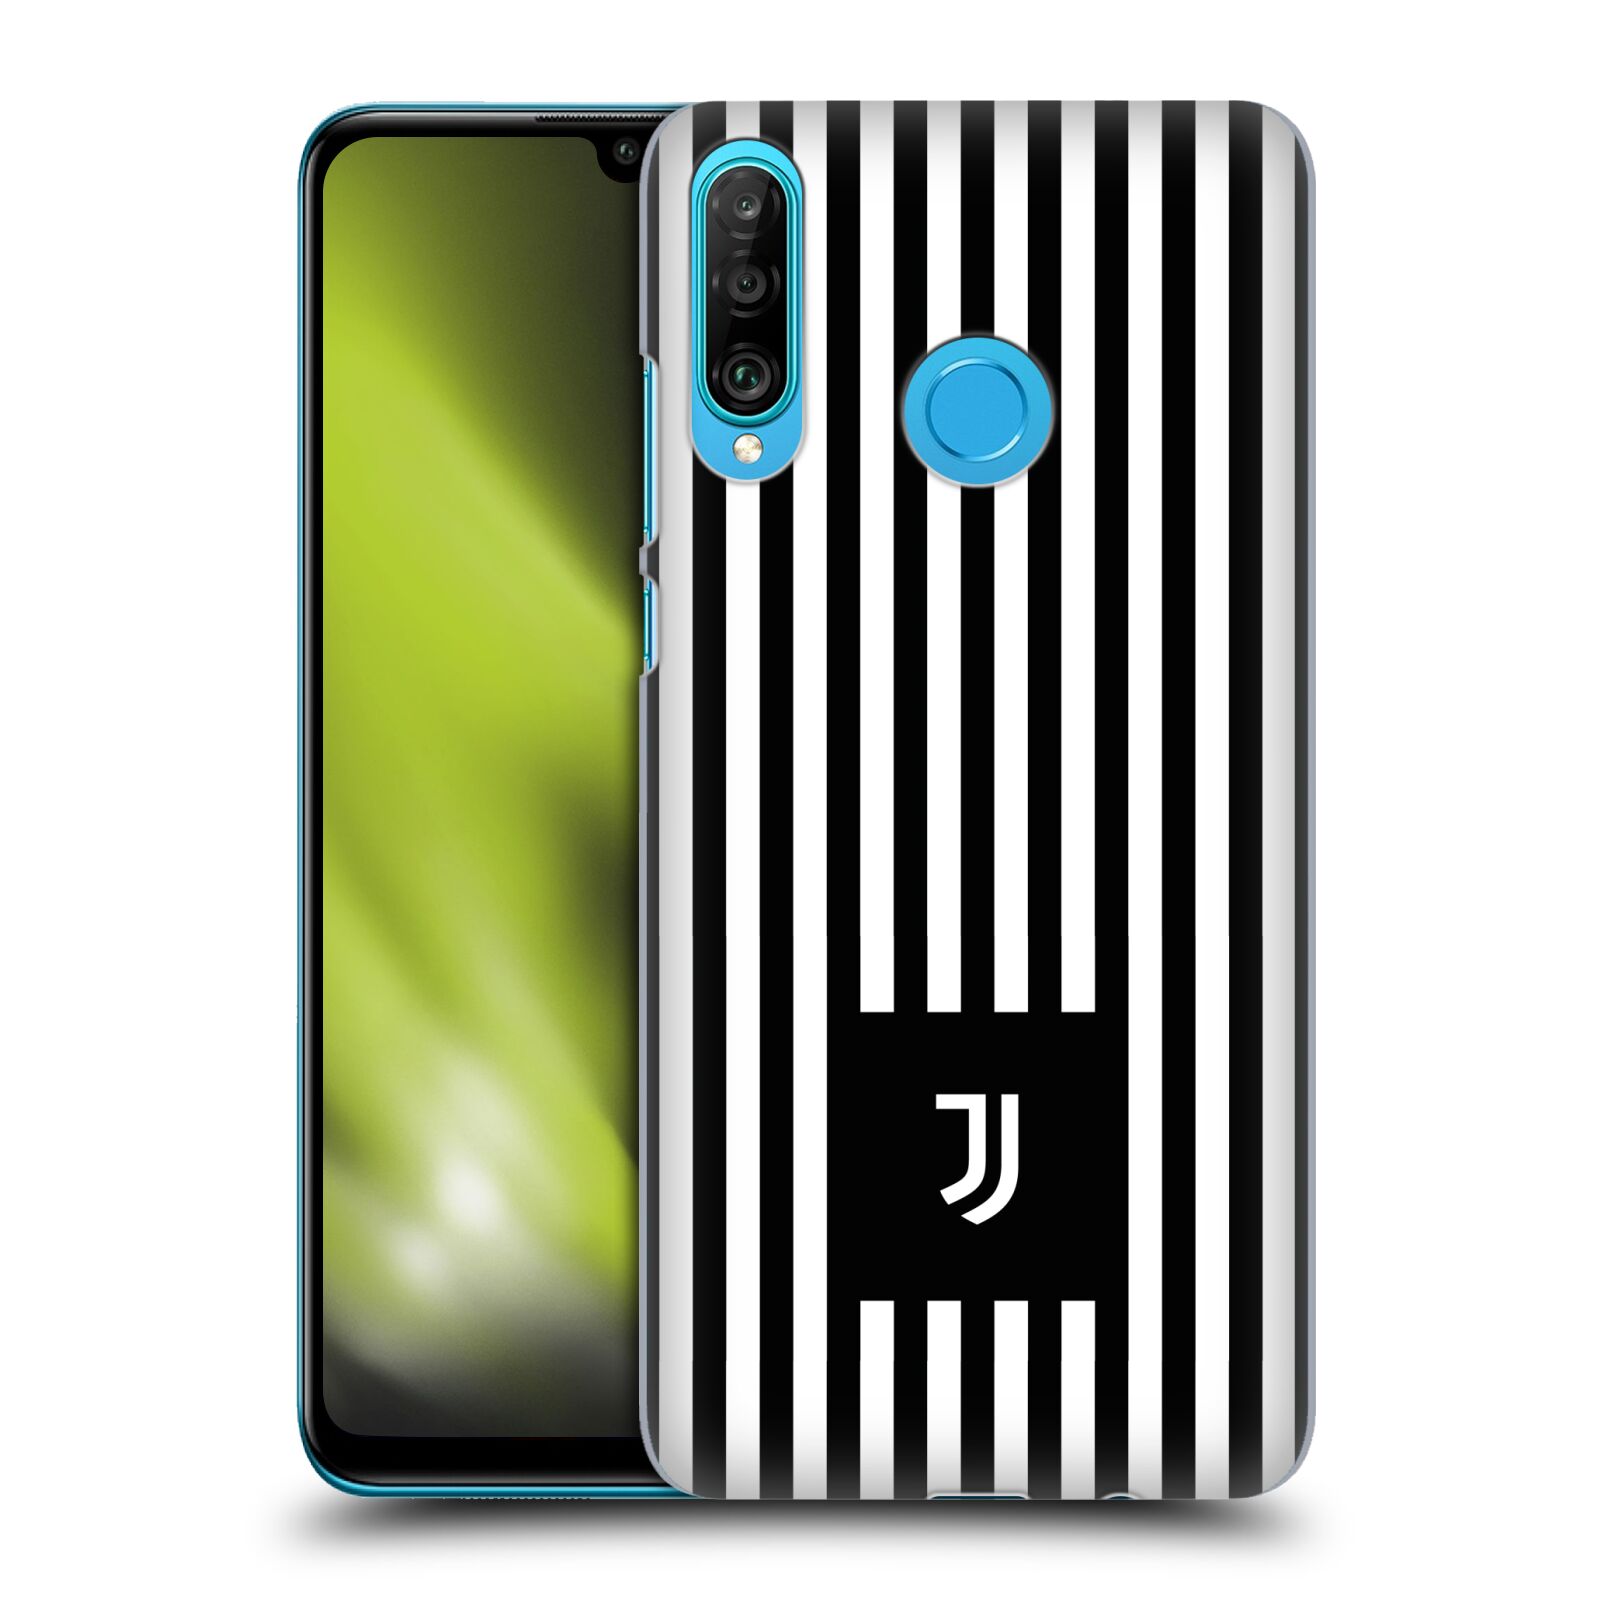 Pouzdro na mobil Huawei P30 LITE - HEAD CASE - Fotbalový klub Juventus FC černobílé pruhy znak